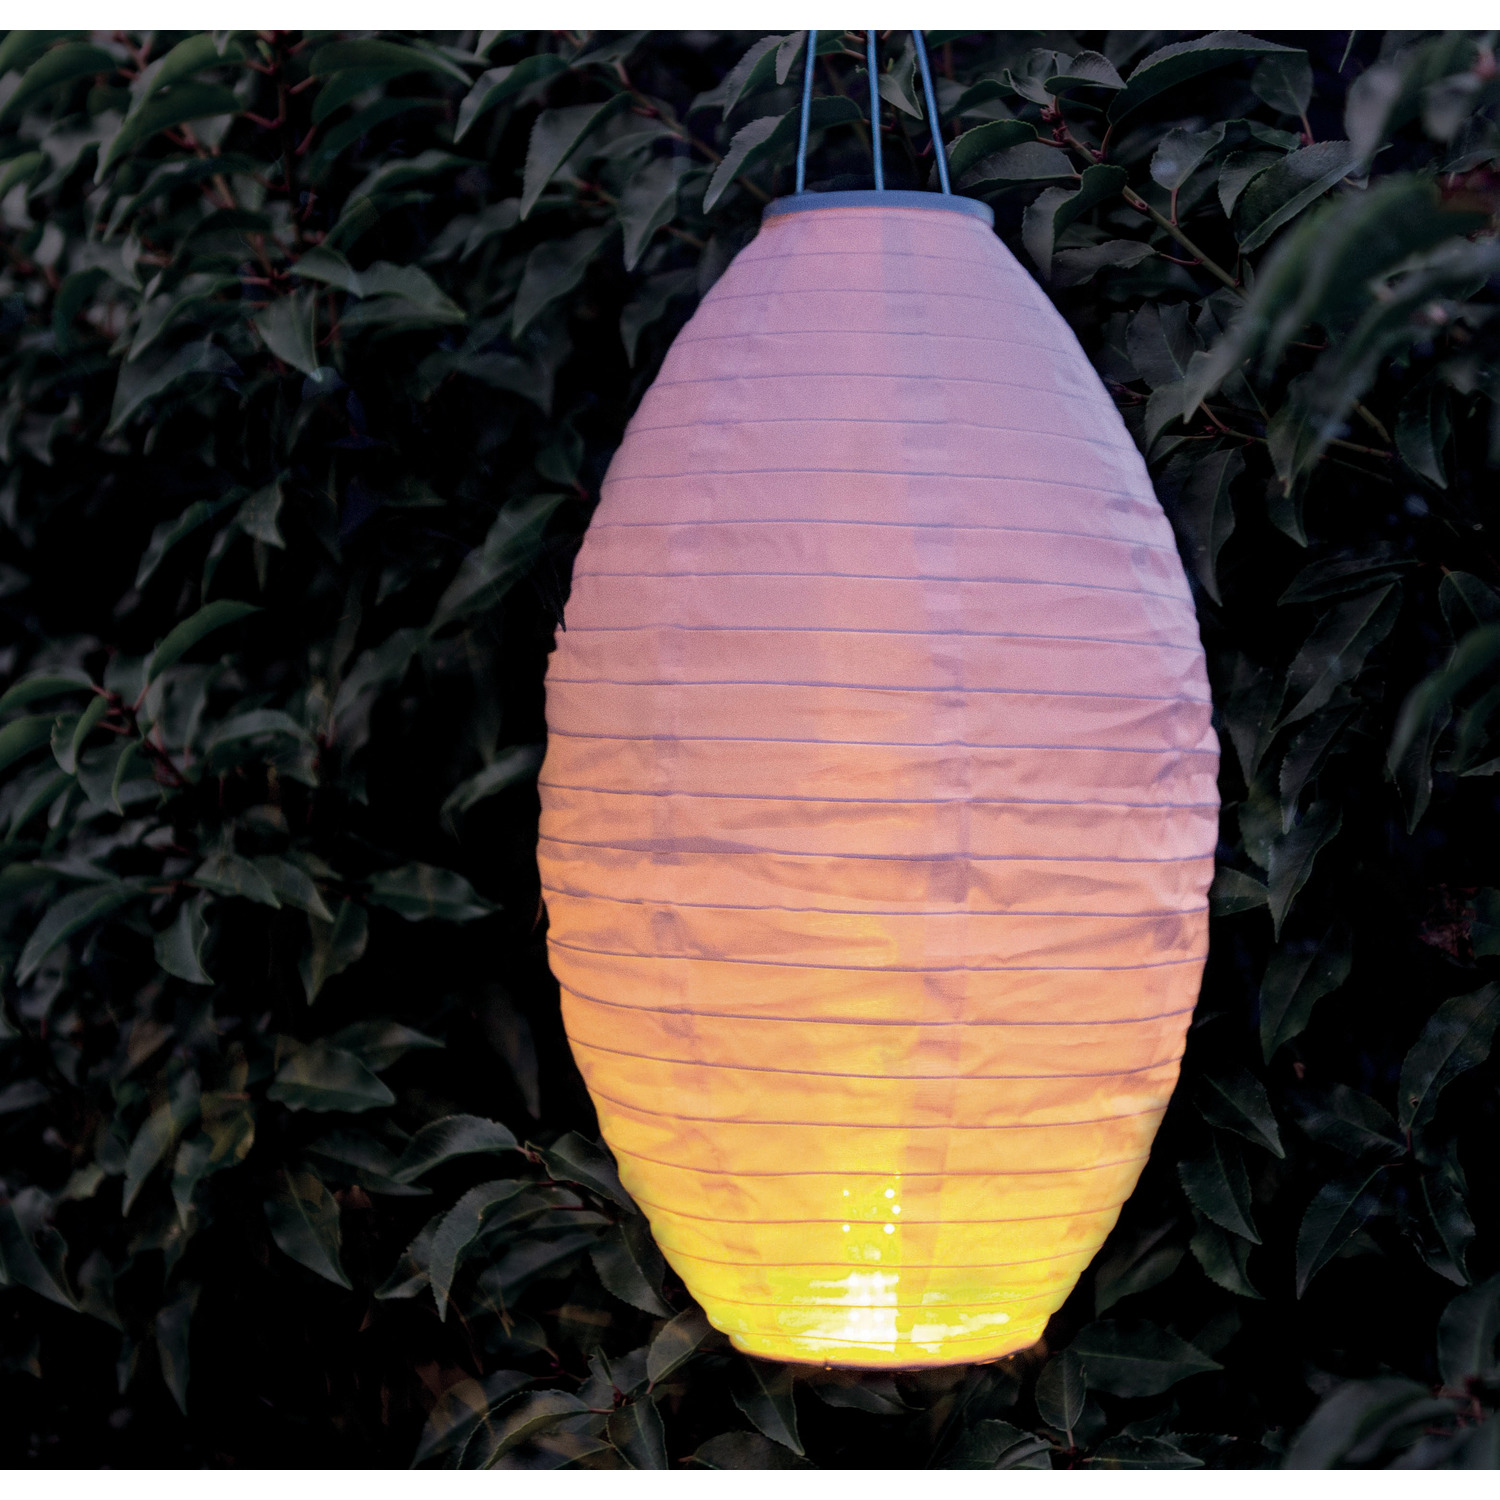 6x stuks luxe solar lampion-lampionnen wit met realistisch vlameffect 30 x 50 cm